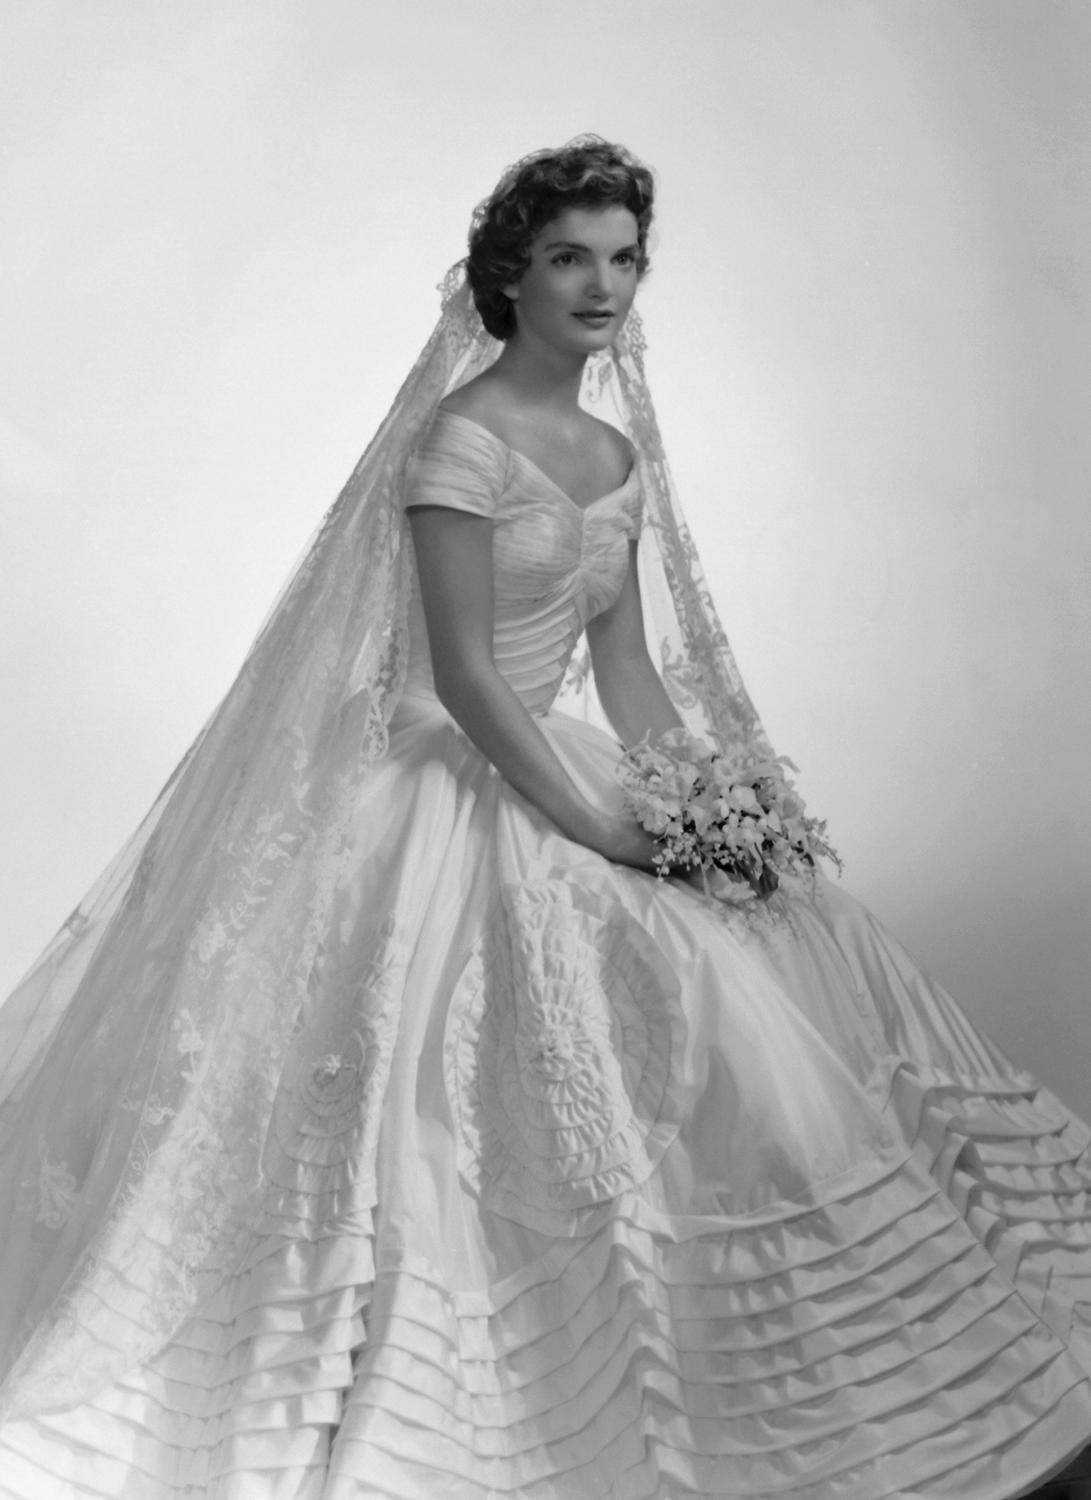 Jaqueline Bouvier 1953 wearing Ann Lowe Wedding Gown